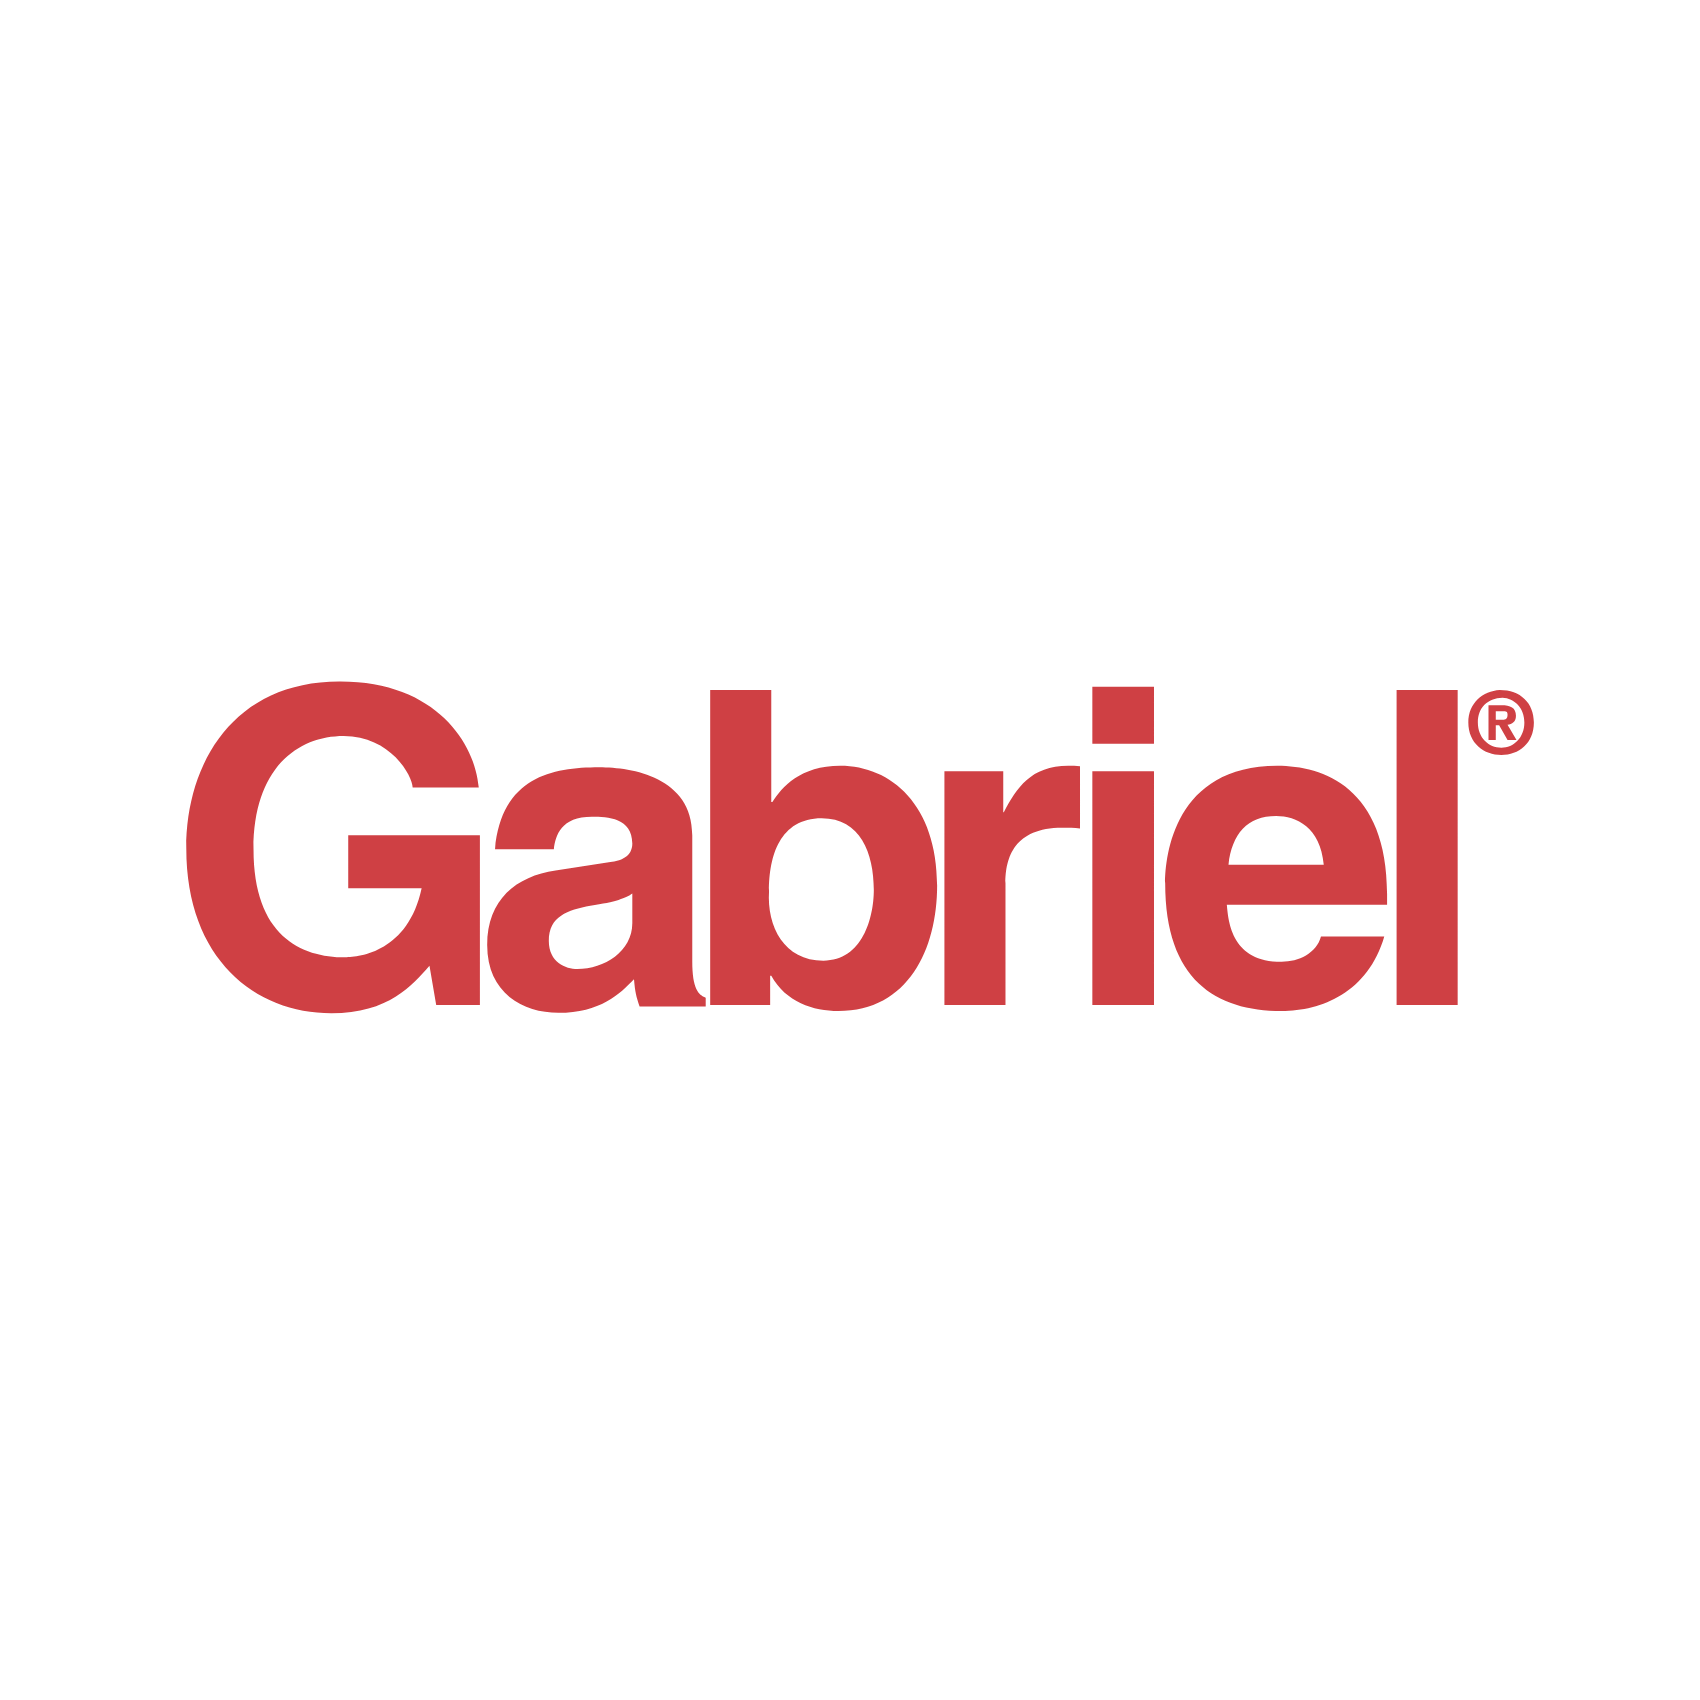 Download Gabriel - The Originals Logo PNG and Vector (PDF, SVG, Ai, EPS ...